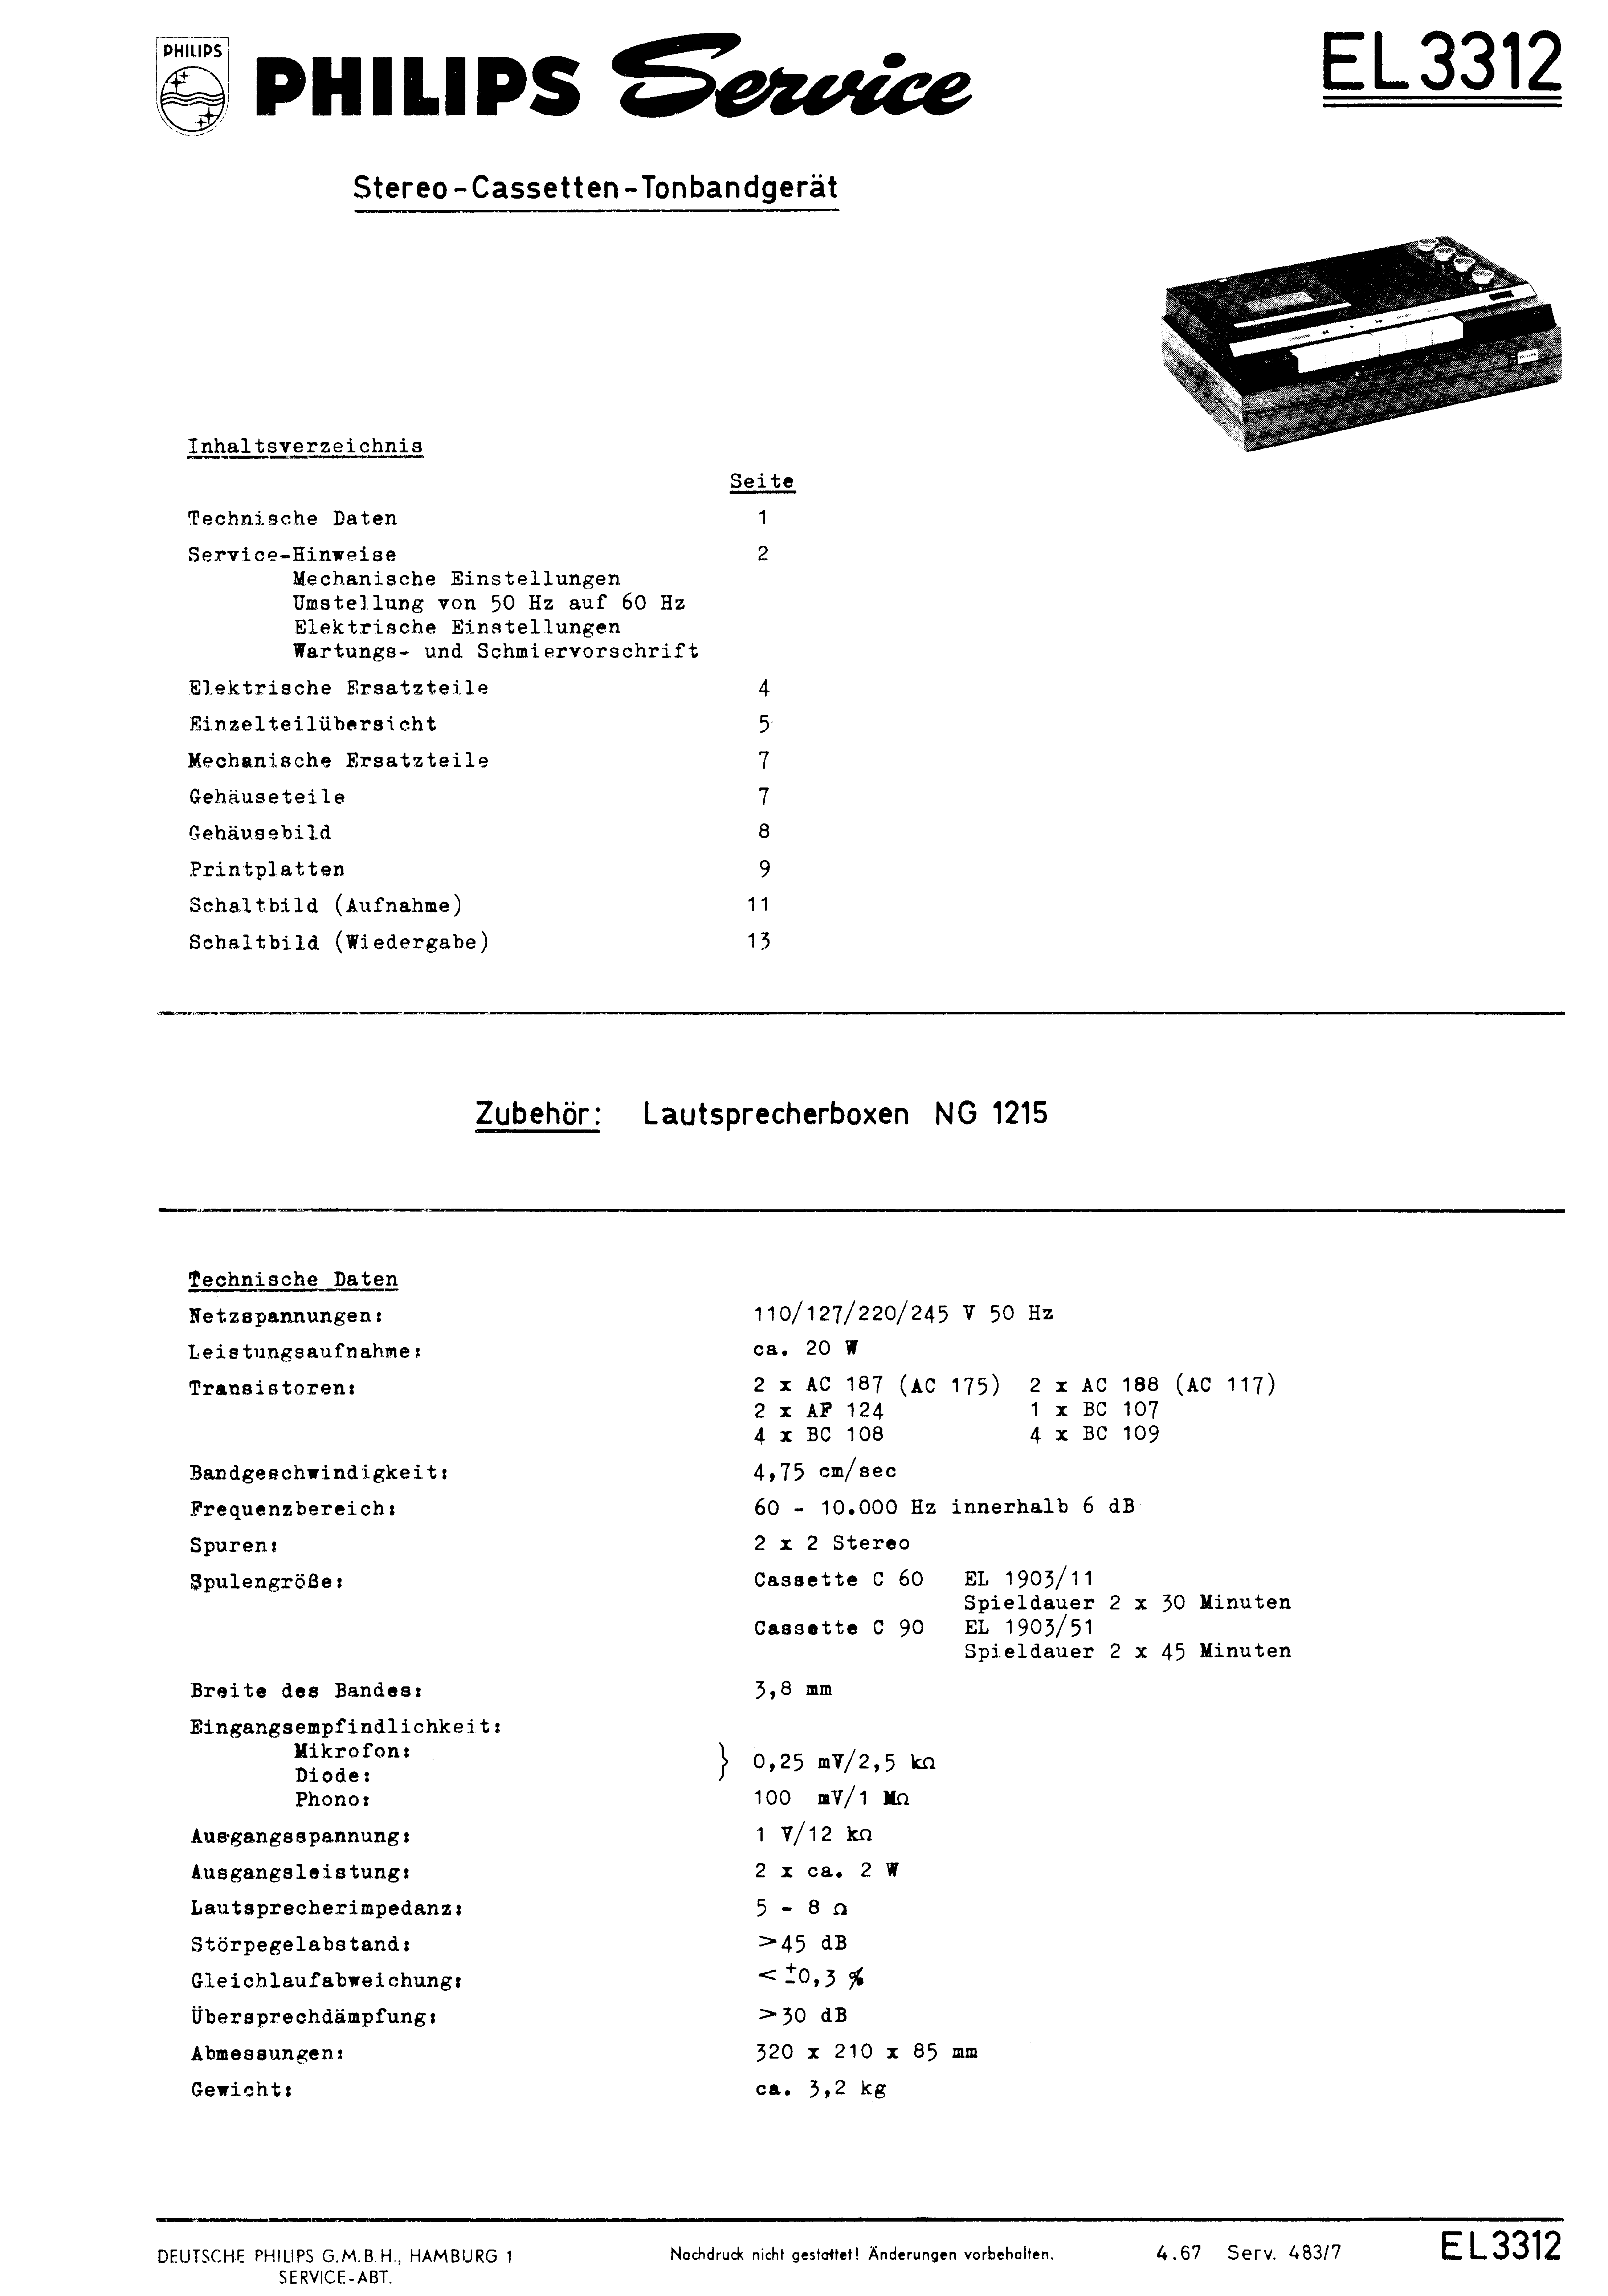 PHILIPS EL3312 SM service manual (1st page)